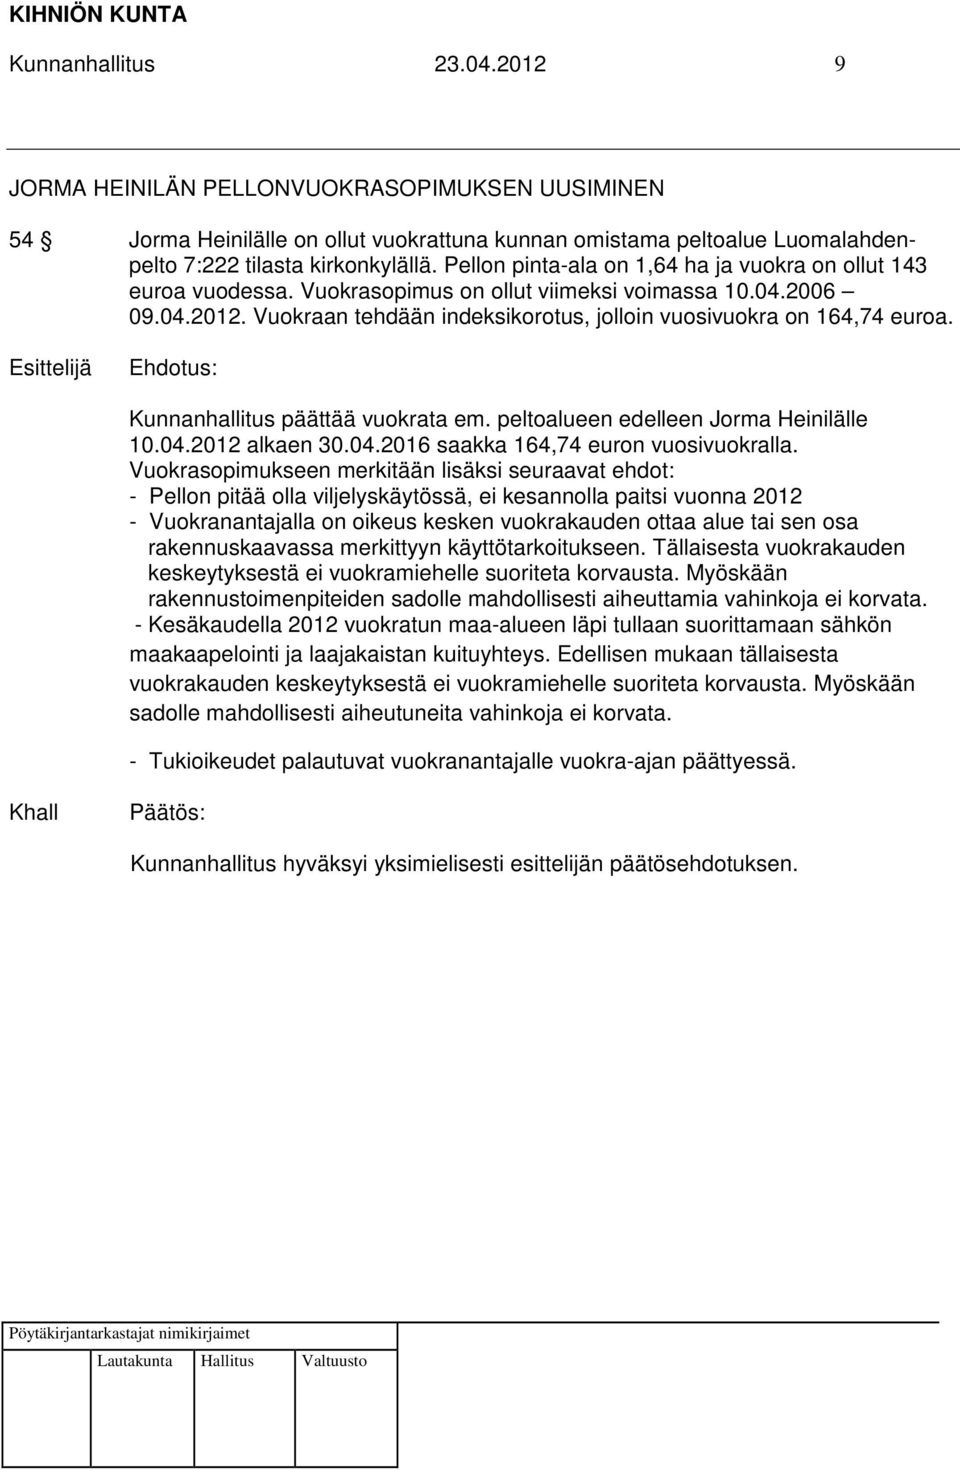 Kunnanhallitus päättää vuokrata em. peltoalueen edelleen Jorma Heinilälle 10.04.2012 alkaen 30.04.2016 saakka 164,74 euron vuosivuokralla.